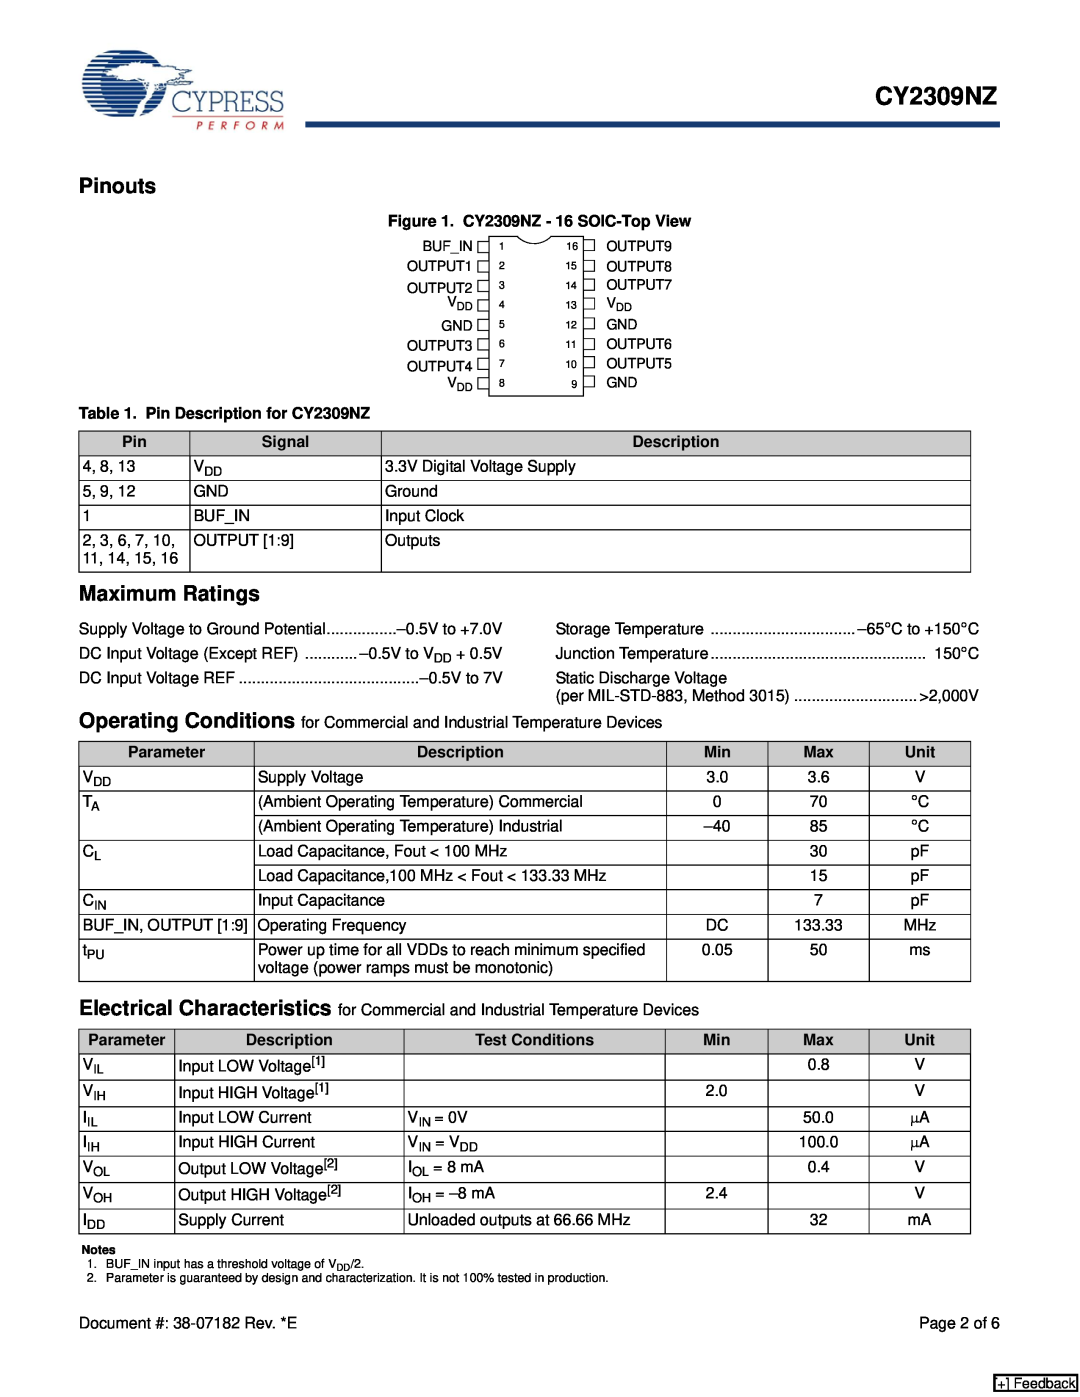 Cypress CY2309NZ manual Pinouts, Maximum Ratings 